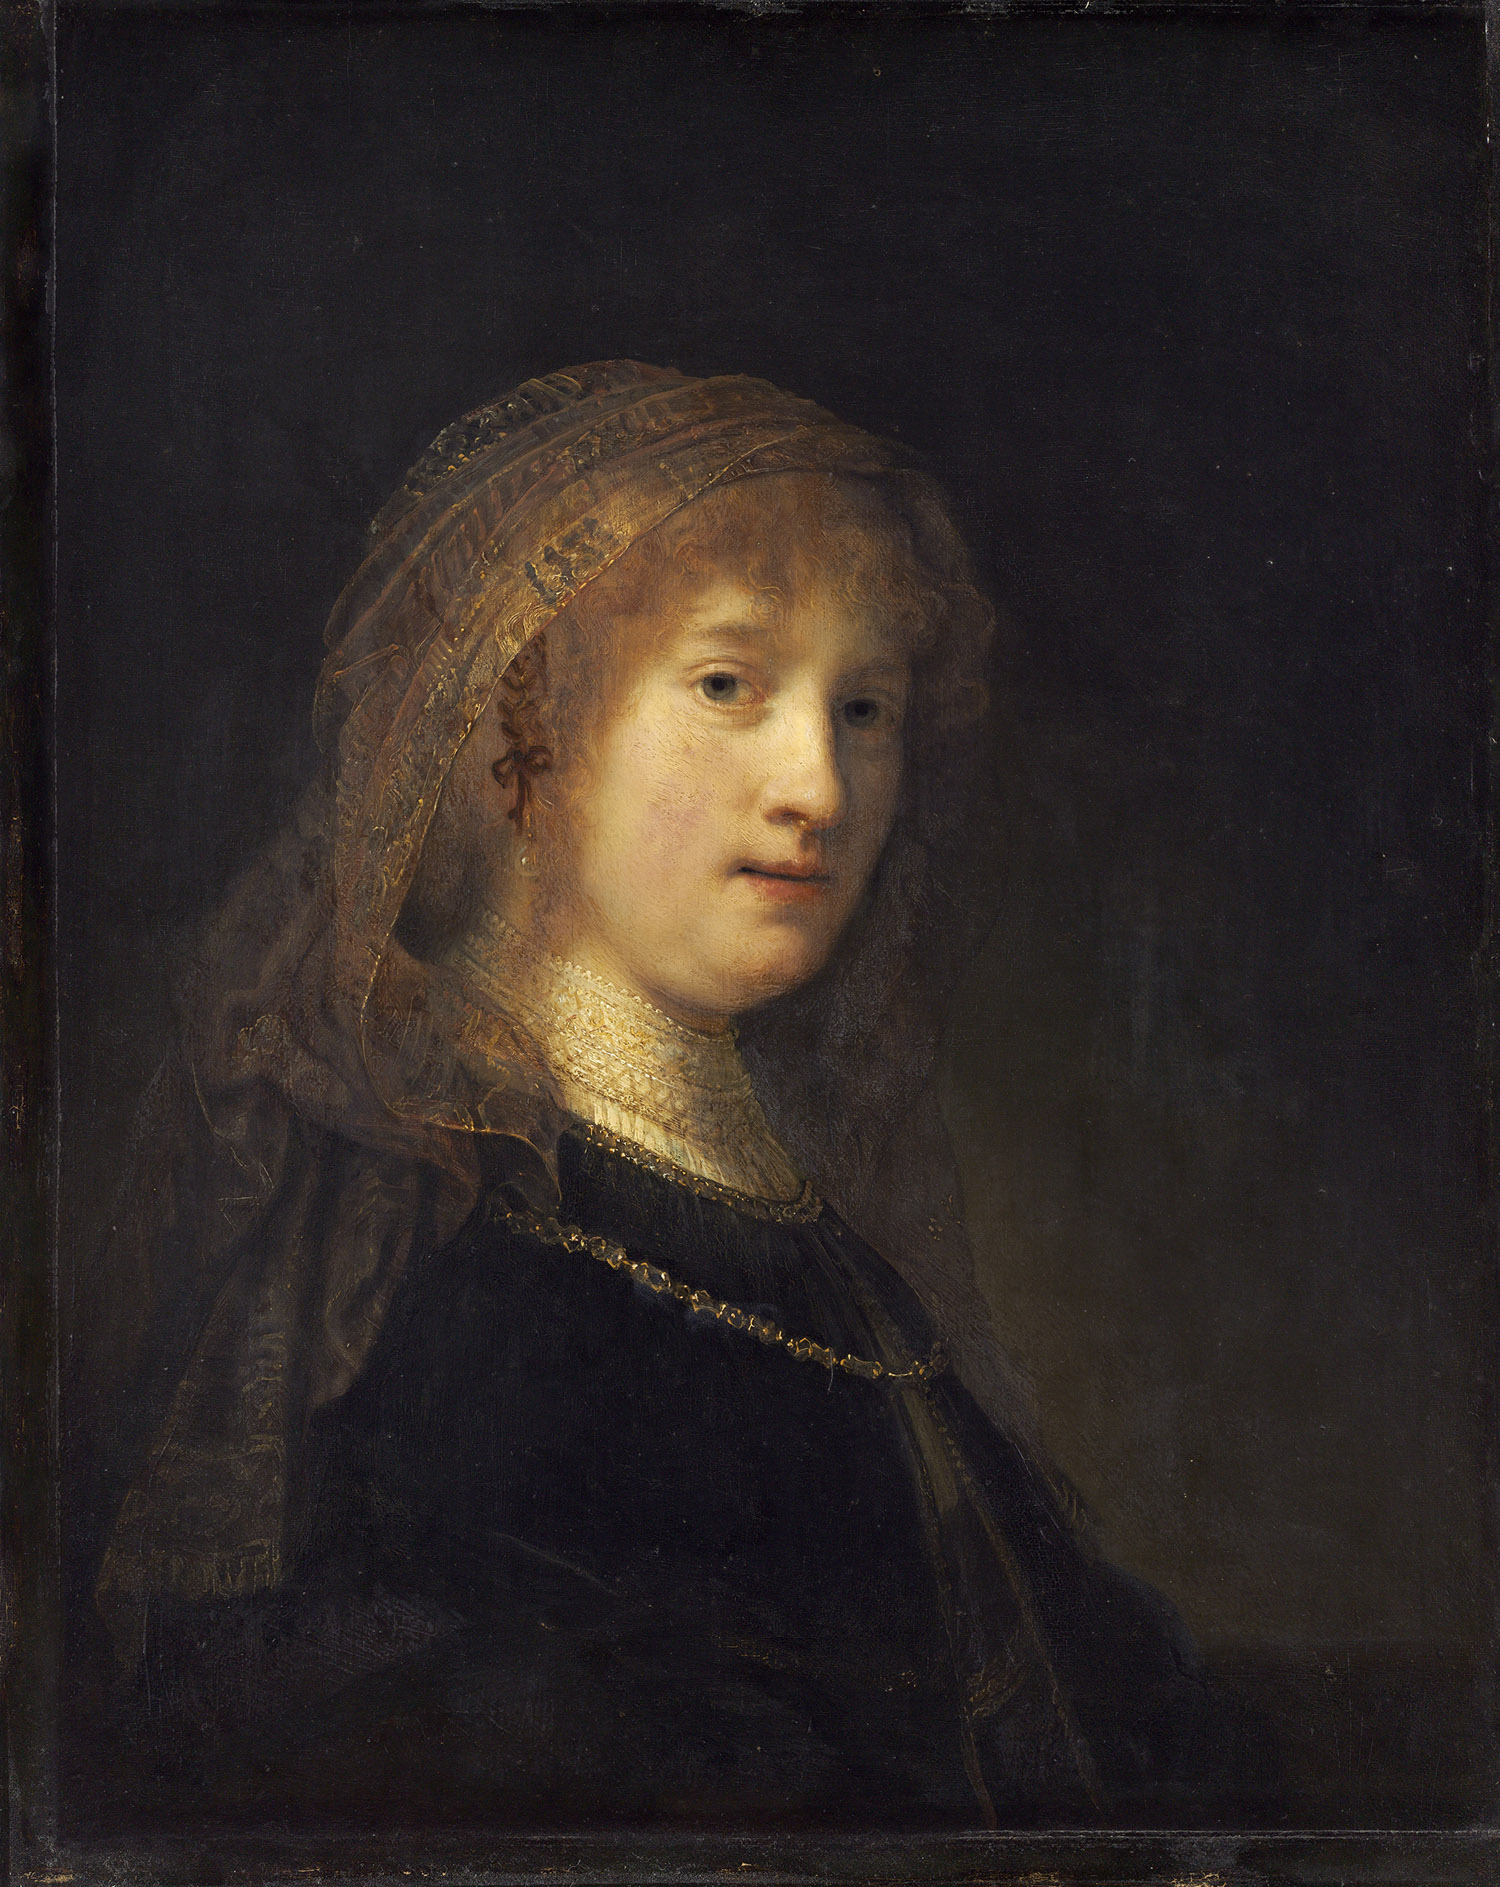 Рембрандт ван Рейн. Портрет Саскии ван Эйленбург, жены художника. 1634-1638.